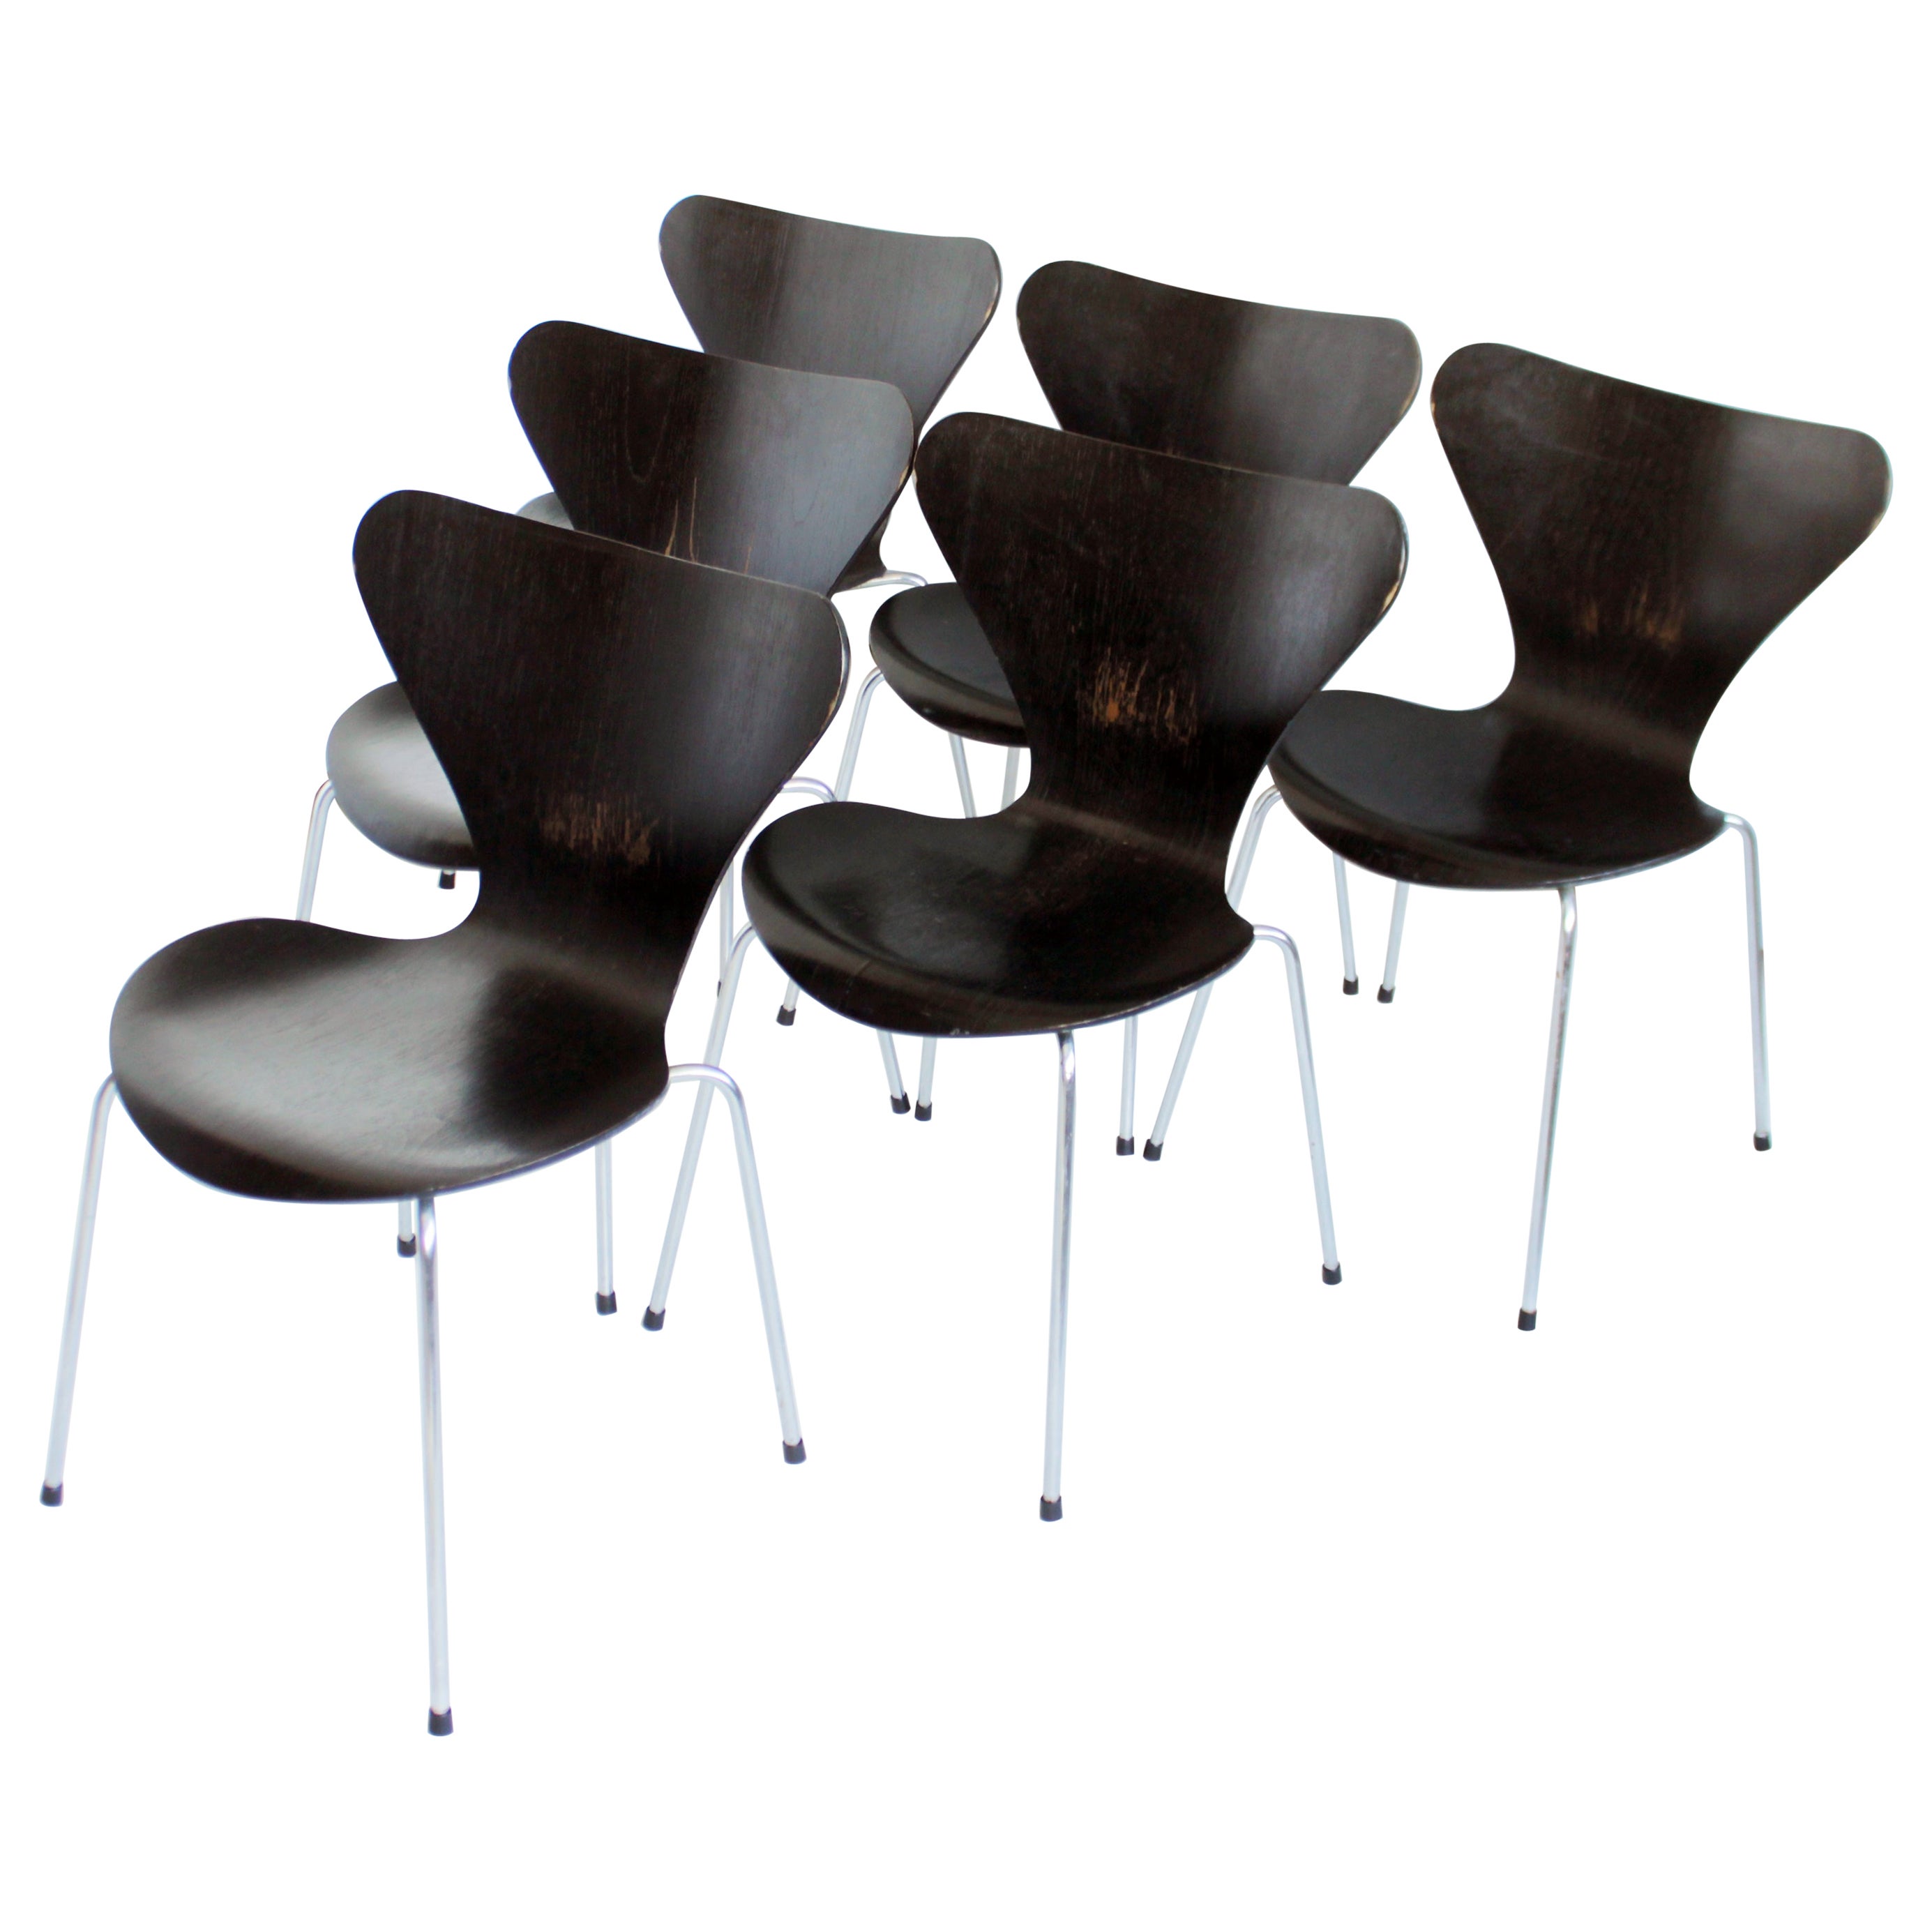 Arne Jacobsen Series 7 Chairs by Fritz Hansen